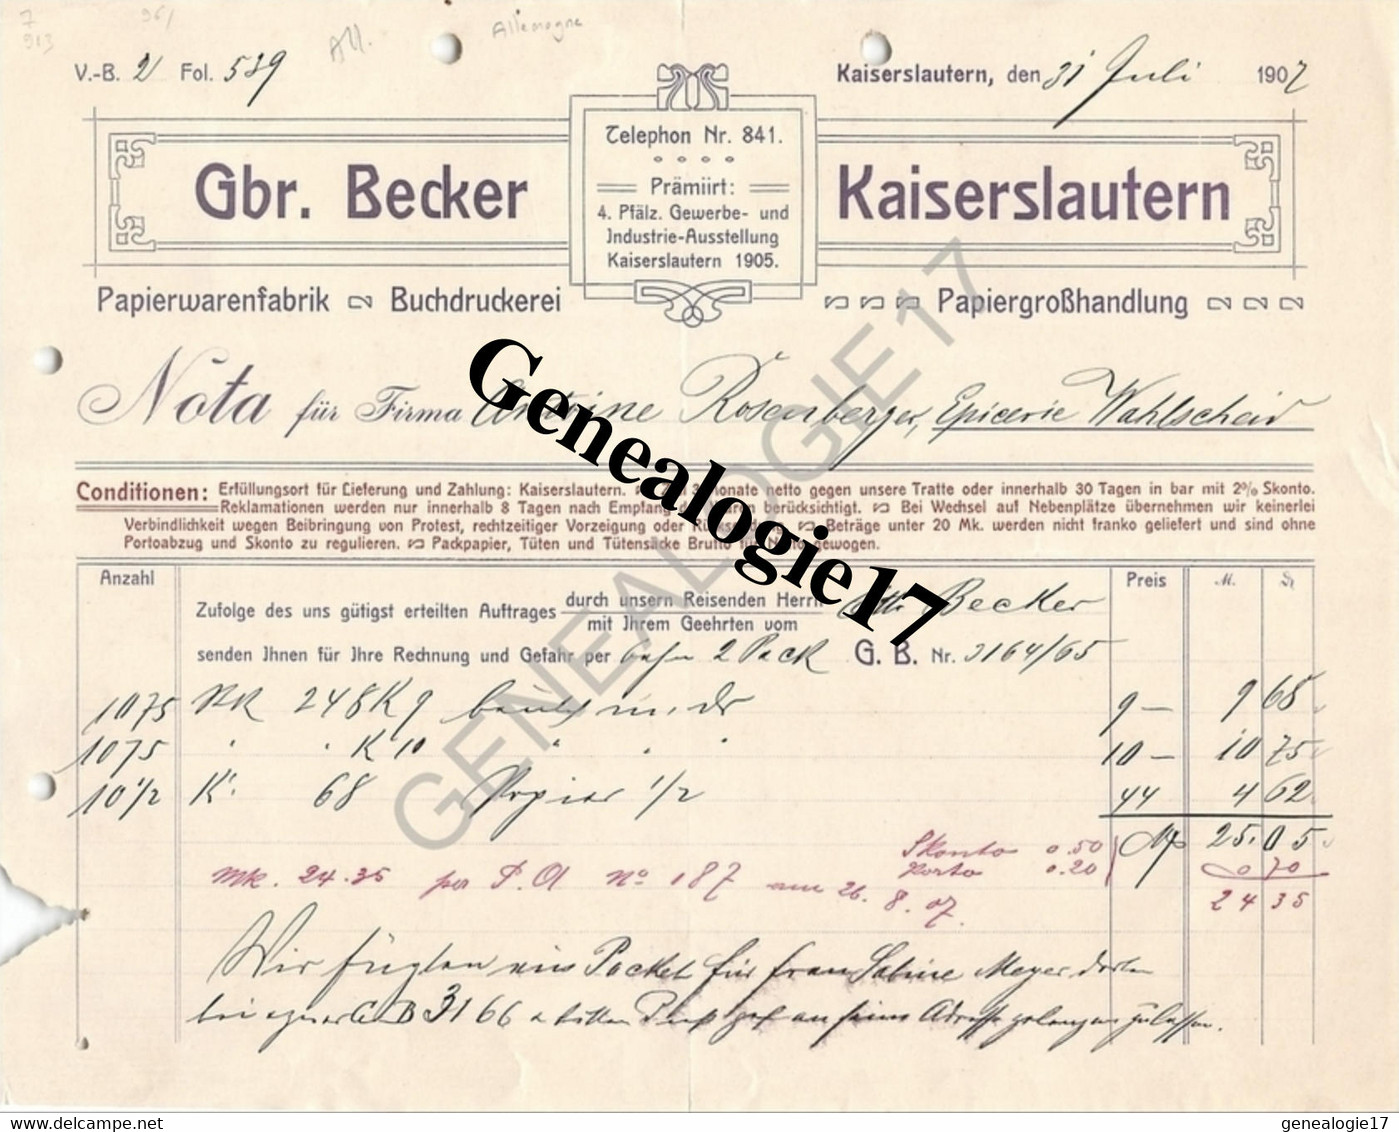 96 0692 ALLEMAGNE KAISERLAUTERN Rhenanie Palatinat 1907 Papier Warenfabrik GBR. BECKER Buchdruckerei - Printing & Stationeries